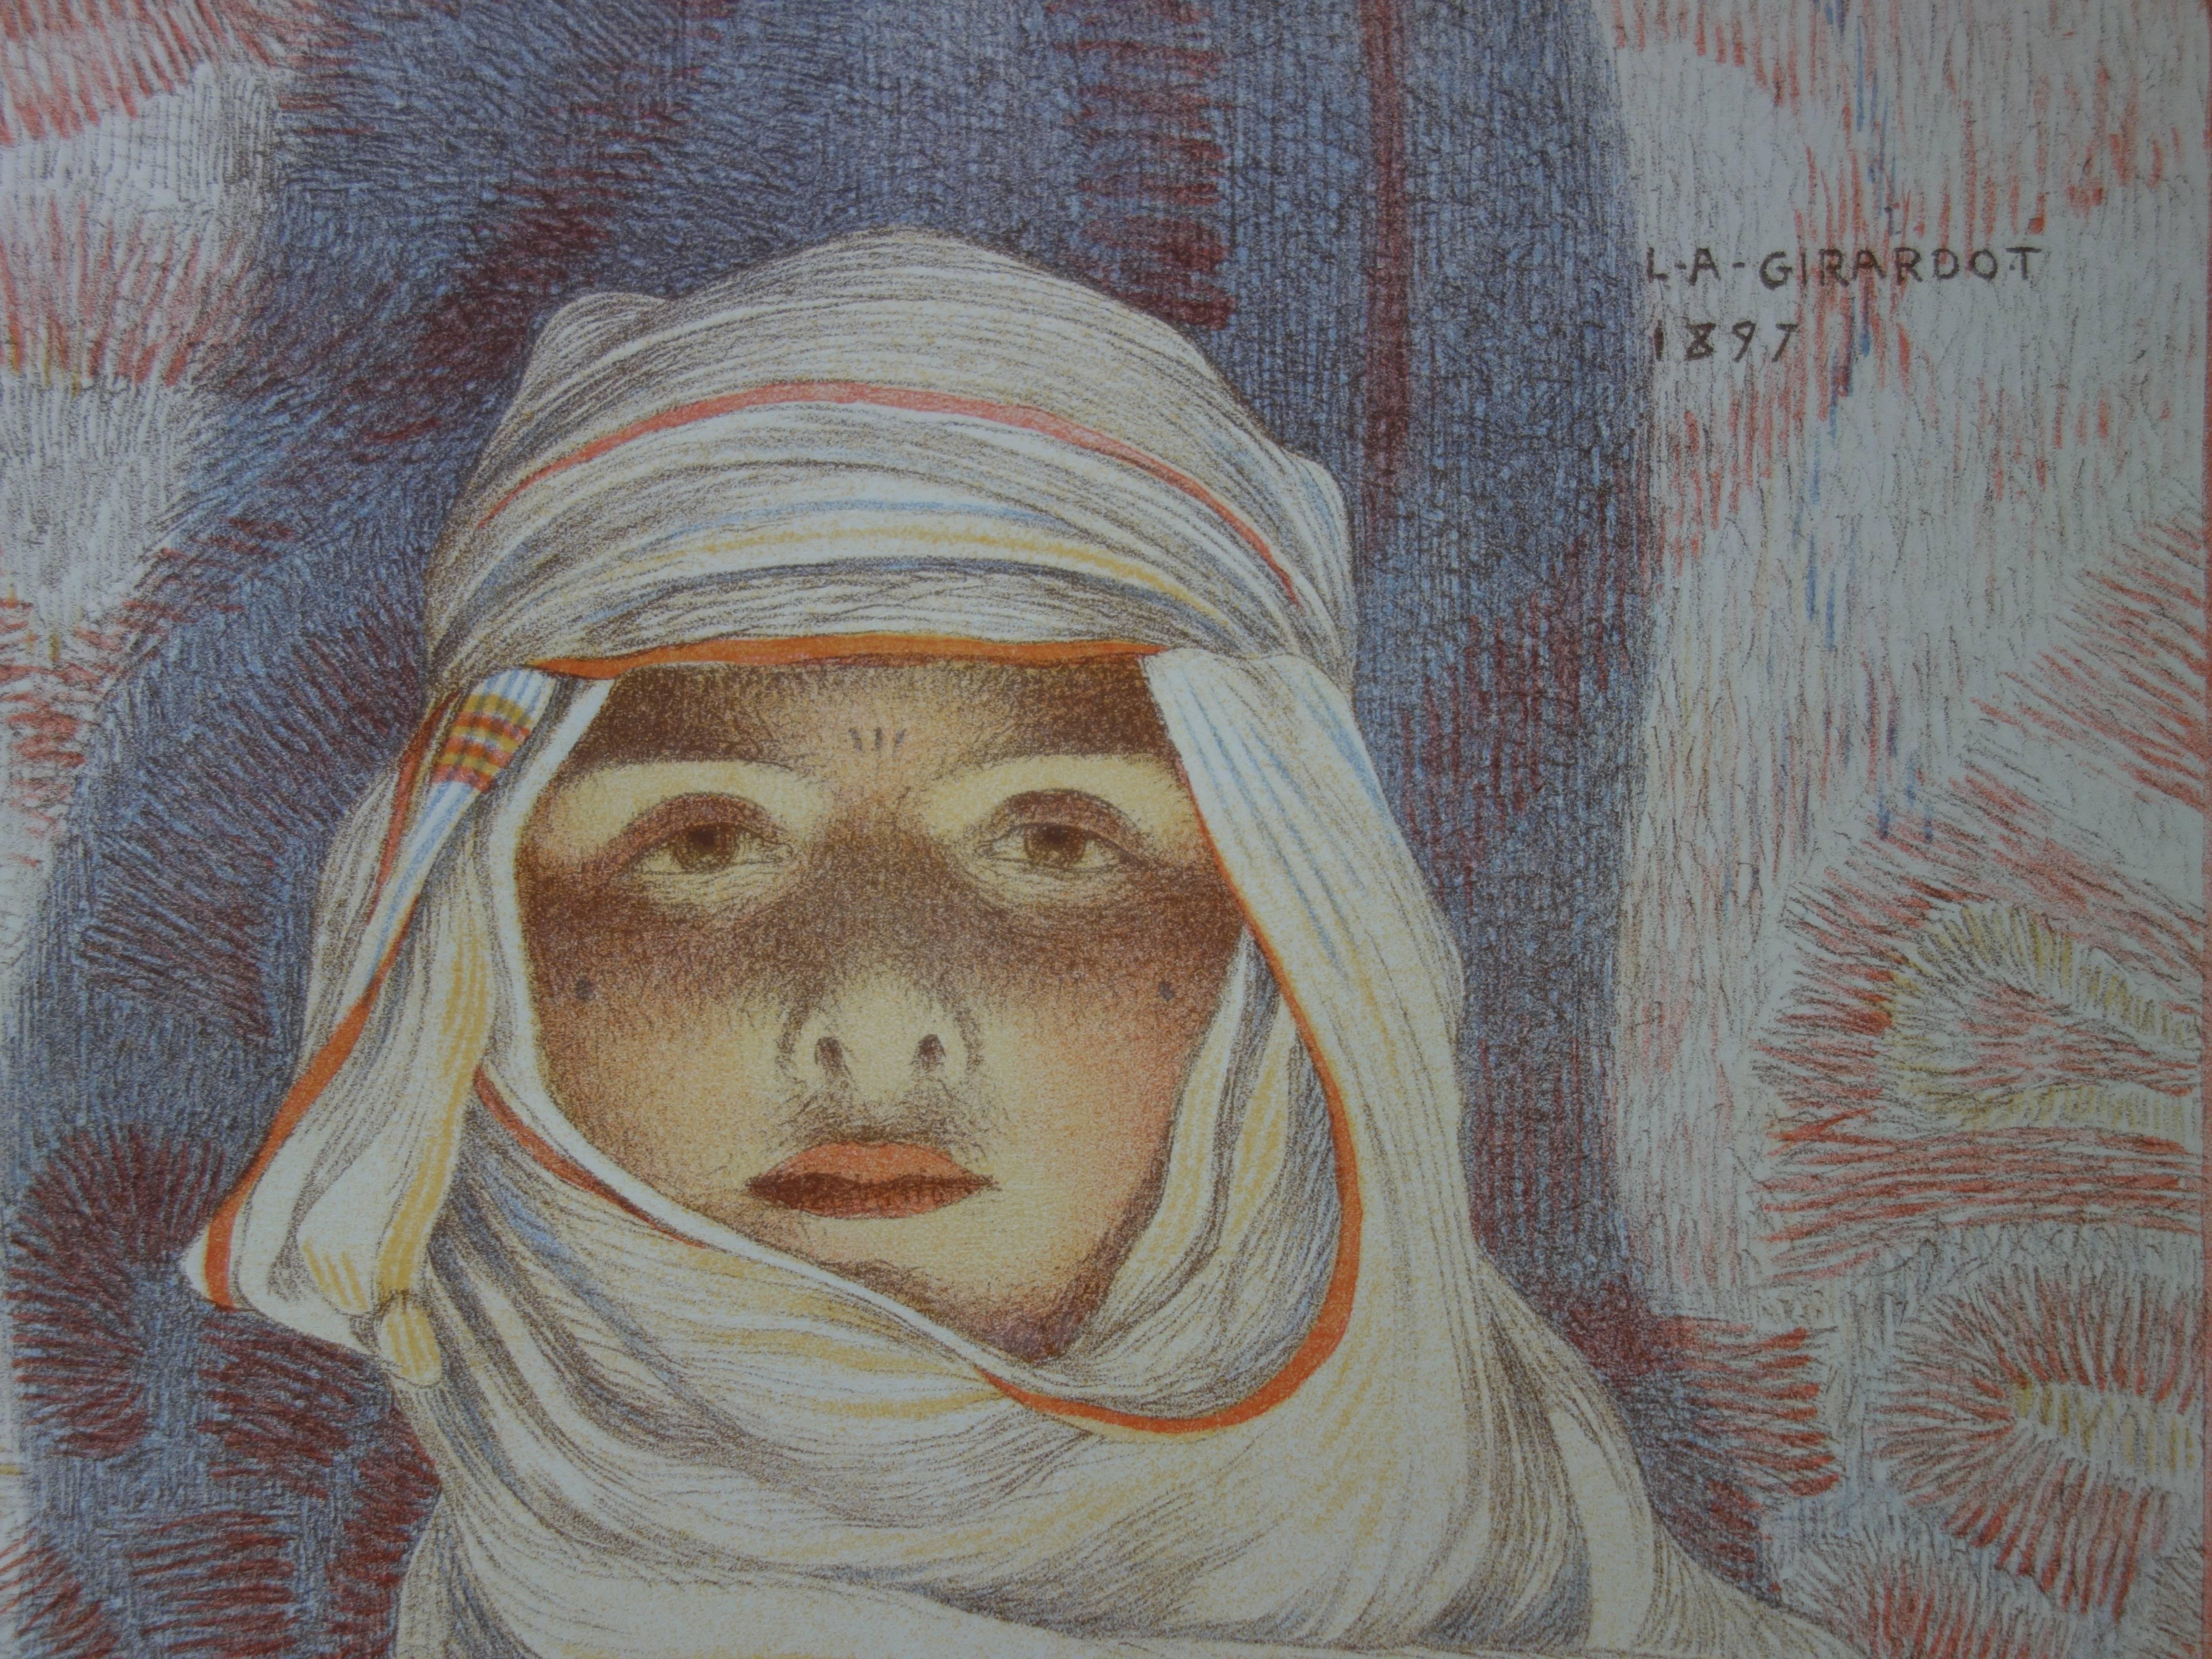 Oriental Woman (Femme du Riff) - original lithograph (1897-1898) - Print by Louis-Abel Girardot